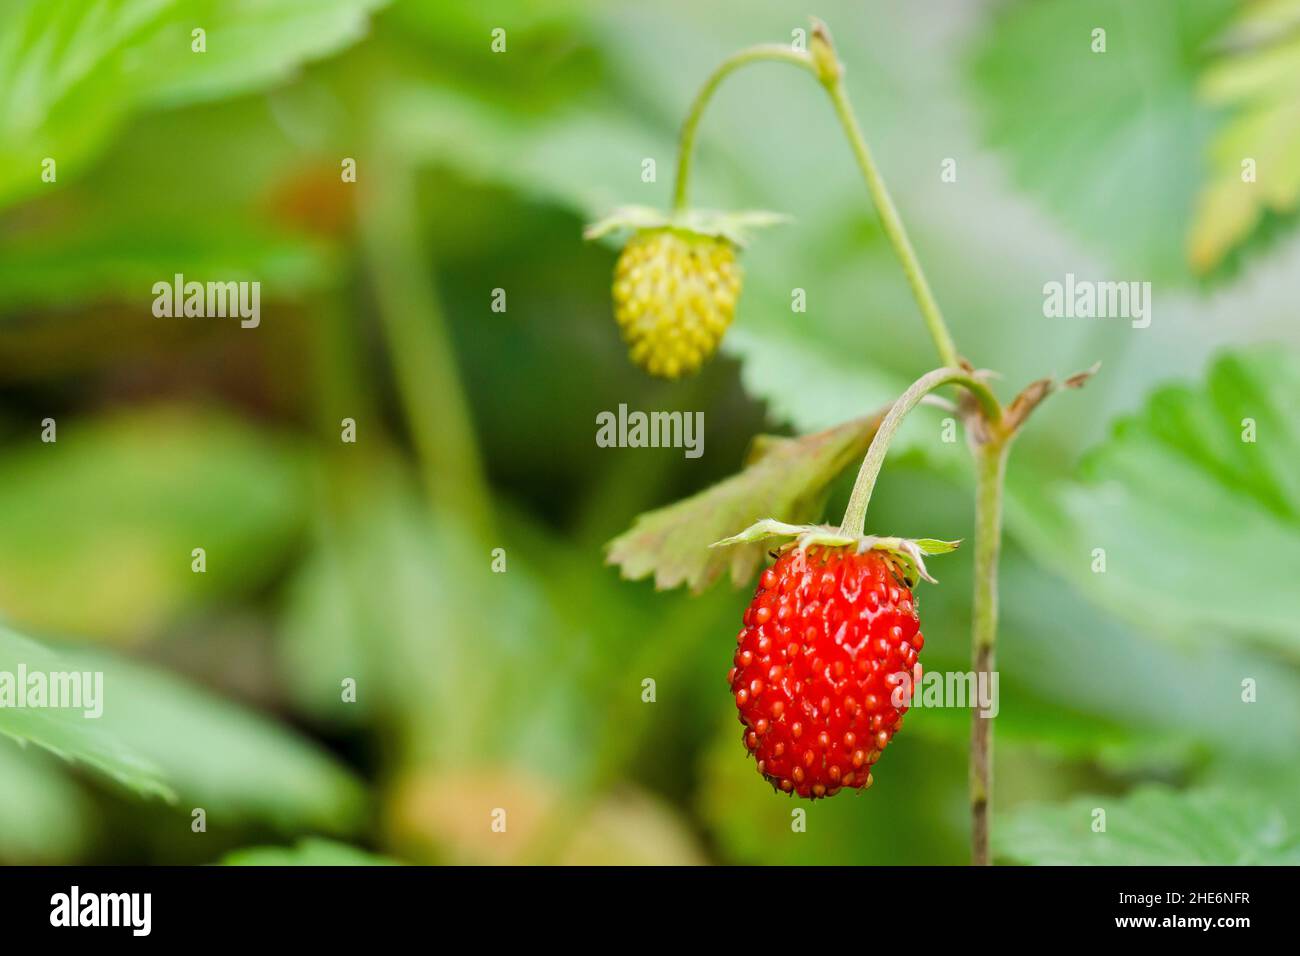 Dvě lesní jahody, zelená nezralá a červená která už uzrála Stock Photo